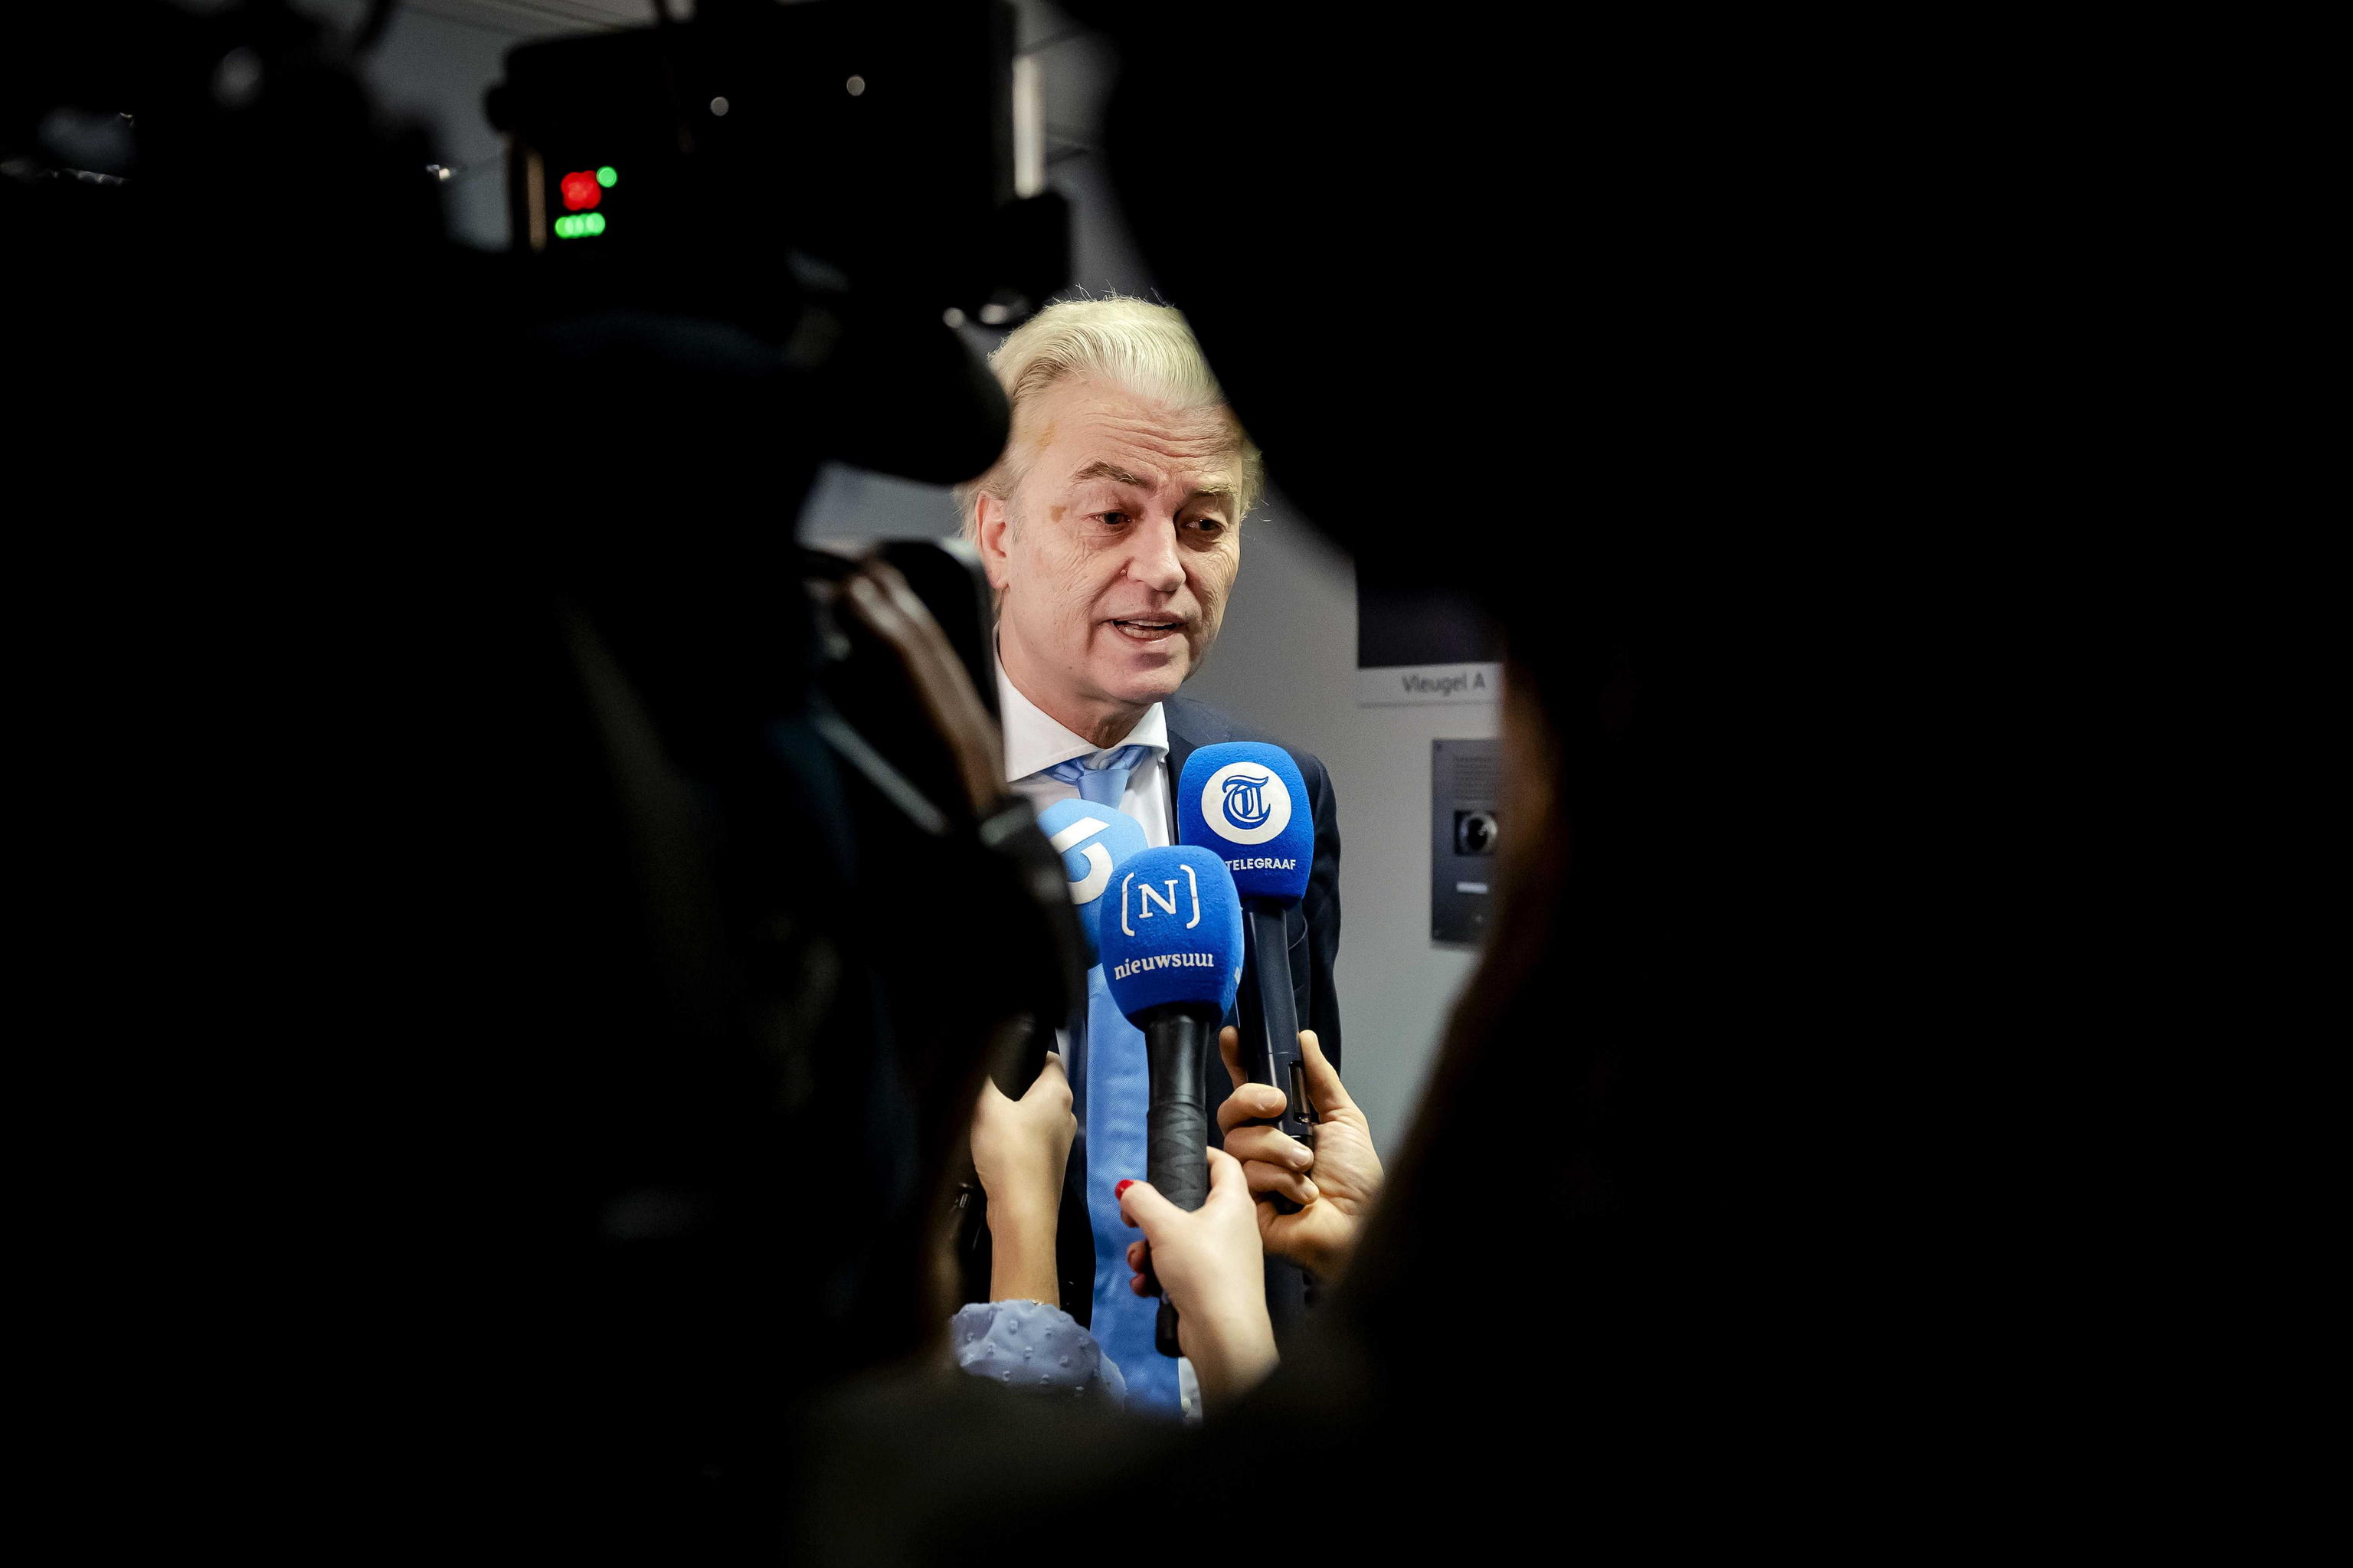 El mediador nombrado por el ultra Wilders para negociar el Gobierno de coalición dimite por un escándalo de corrupción